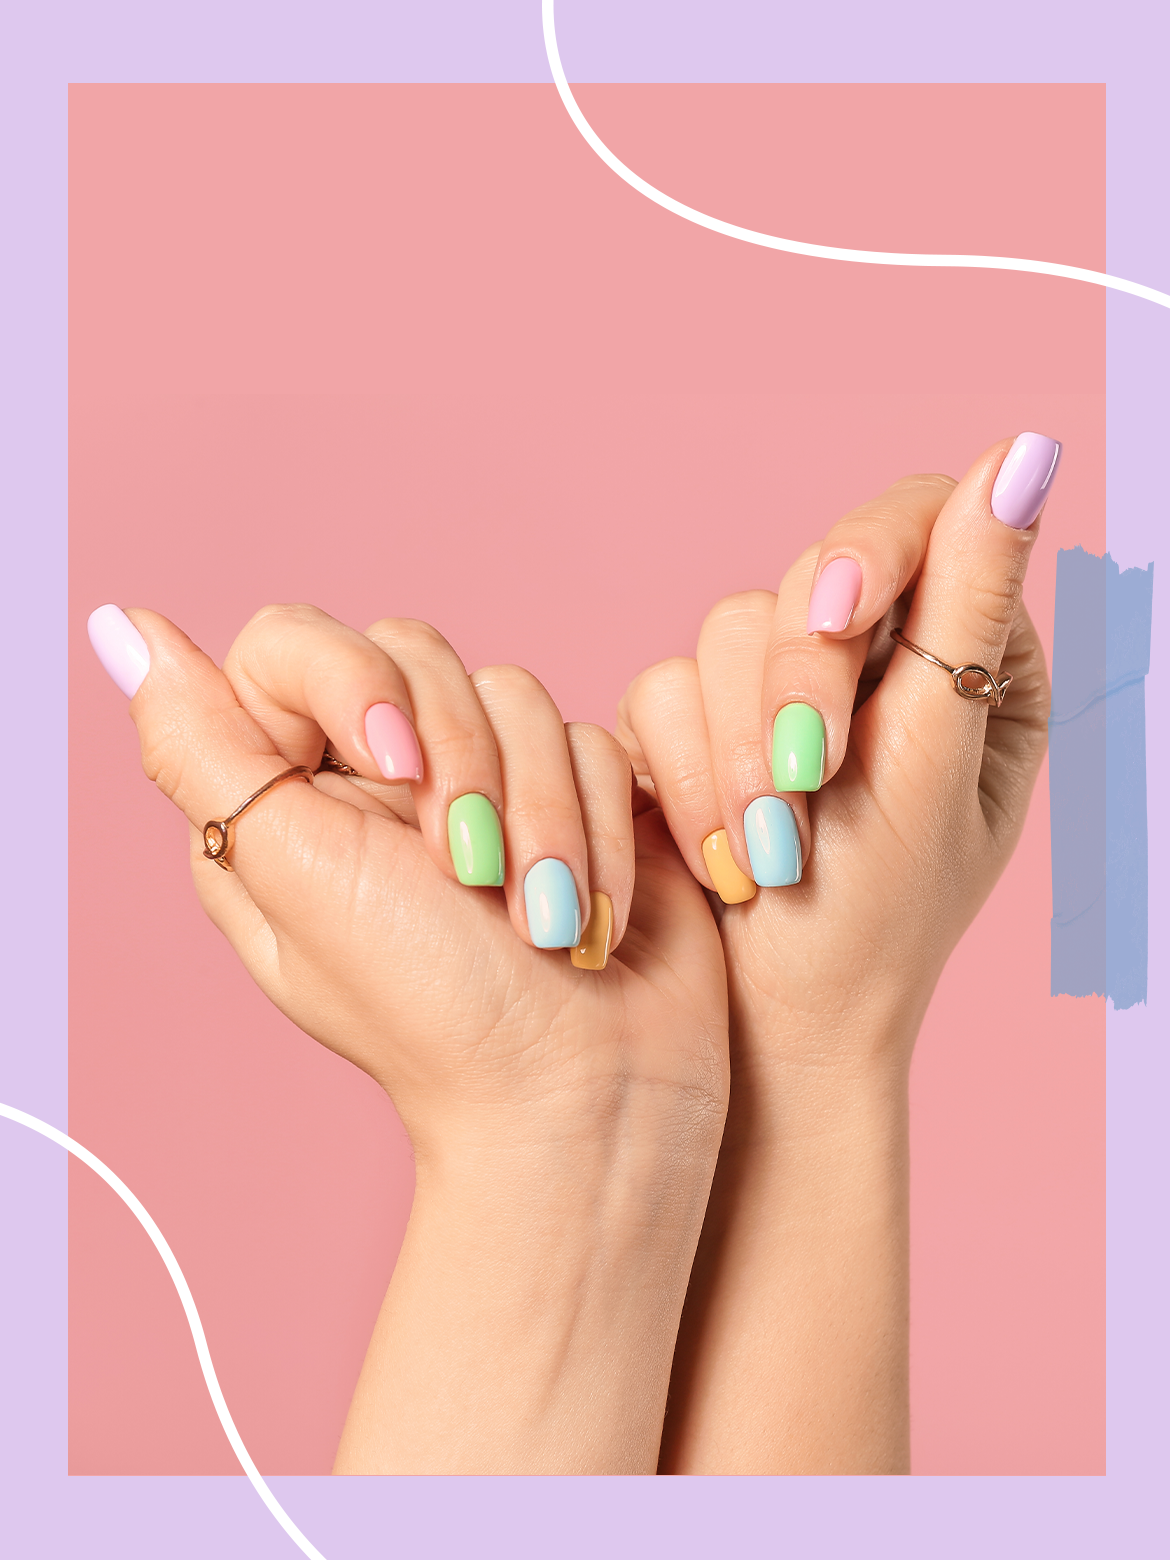 Acrylic nails: Why should you get them? – Liberty Nailbar